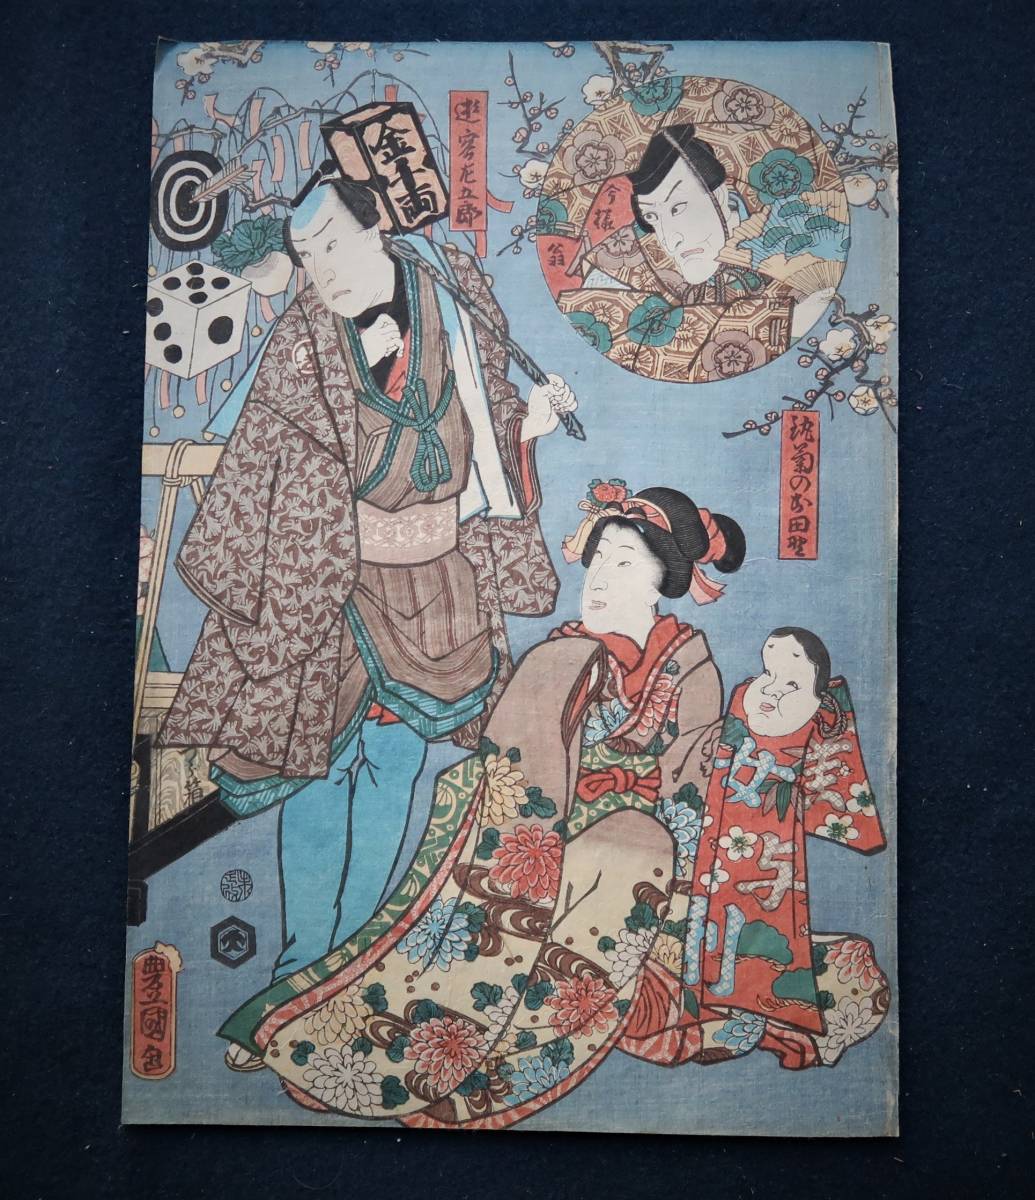 أوكييو-إي بواسطة تويوكوني الثالث, المسافر ساجورو, الرجل العجوز الحديث, حقل الأقحوان المستدير, تلوين, أوكييو إي, مطبوعات, لوحة كابوكي, لوحات الممثل